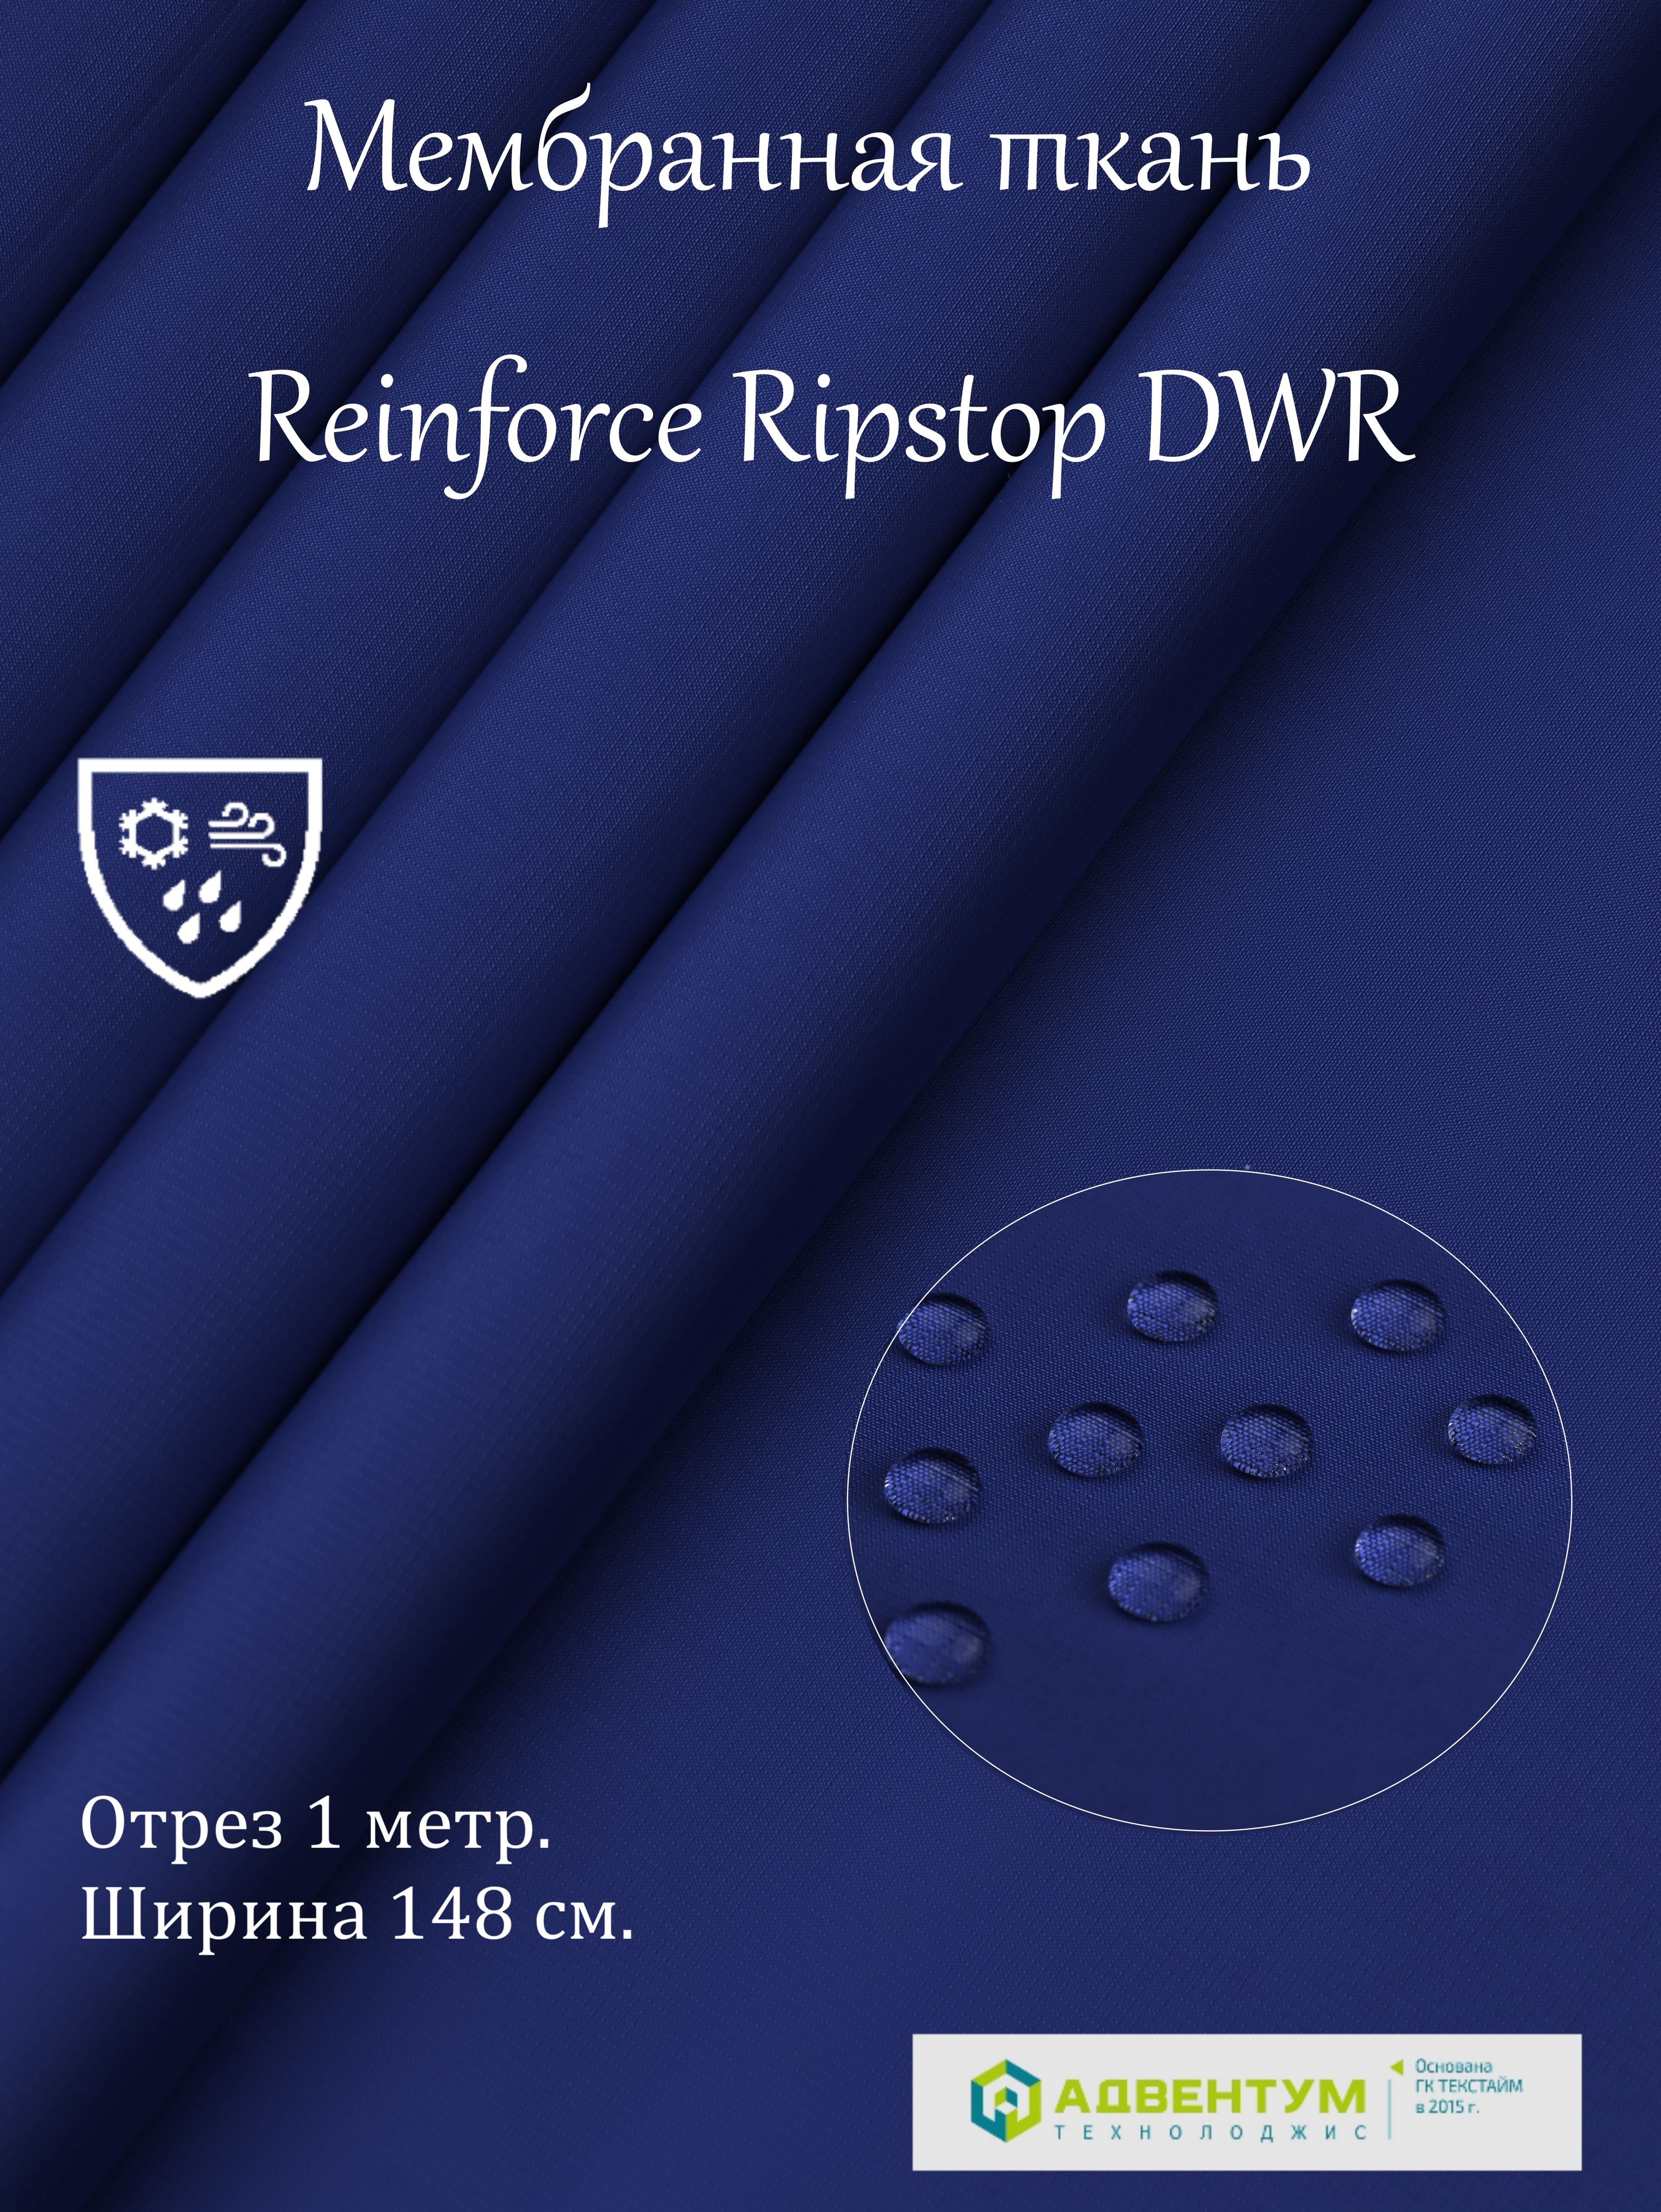 Курточнаяткань(мембранная)-ReinforceRipstopDWR-тканьхардшелл,цвет-василек,длина1метр,ширина150см,плотность140г/м2